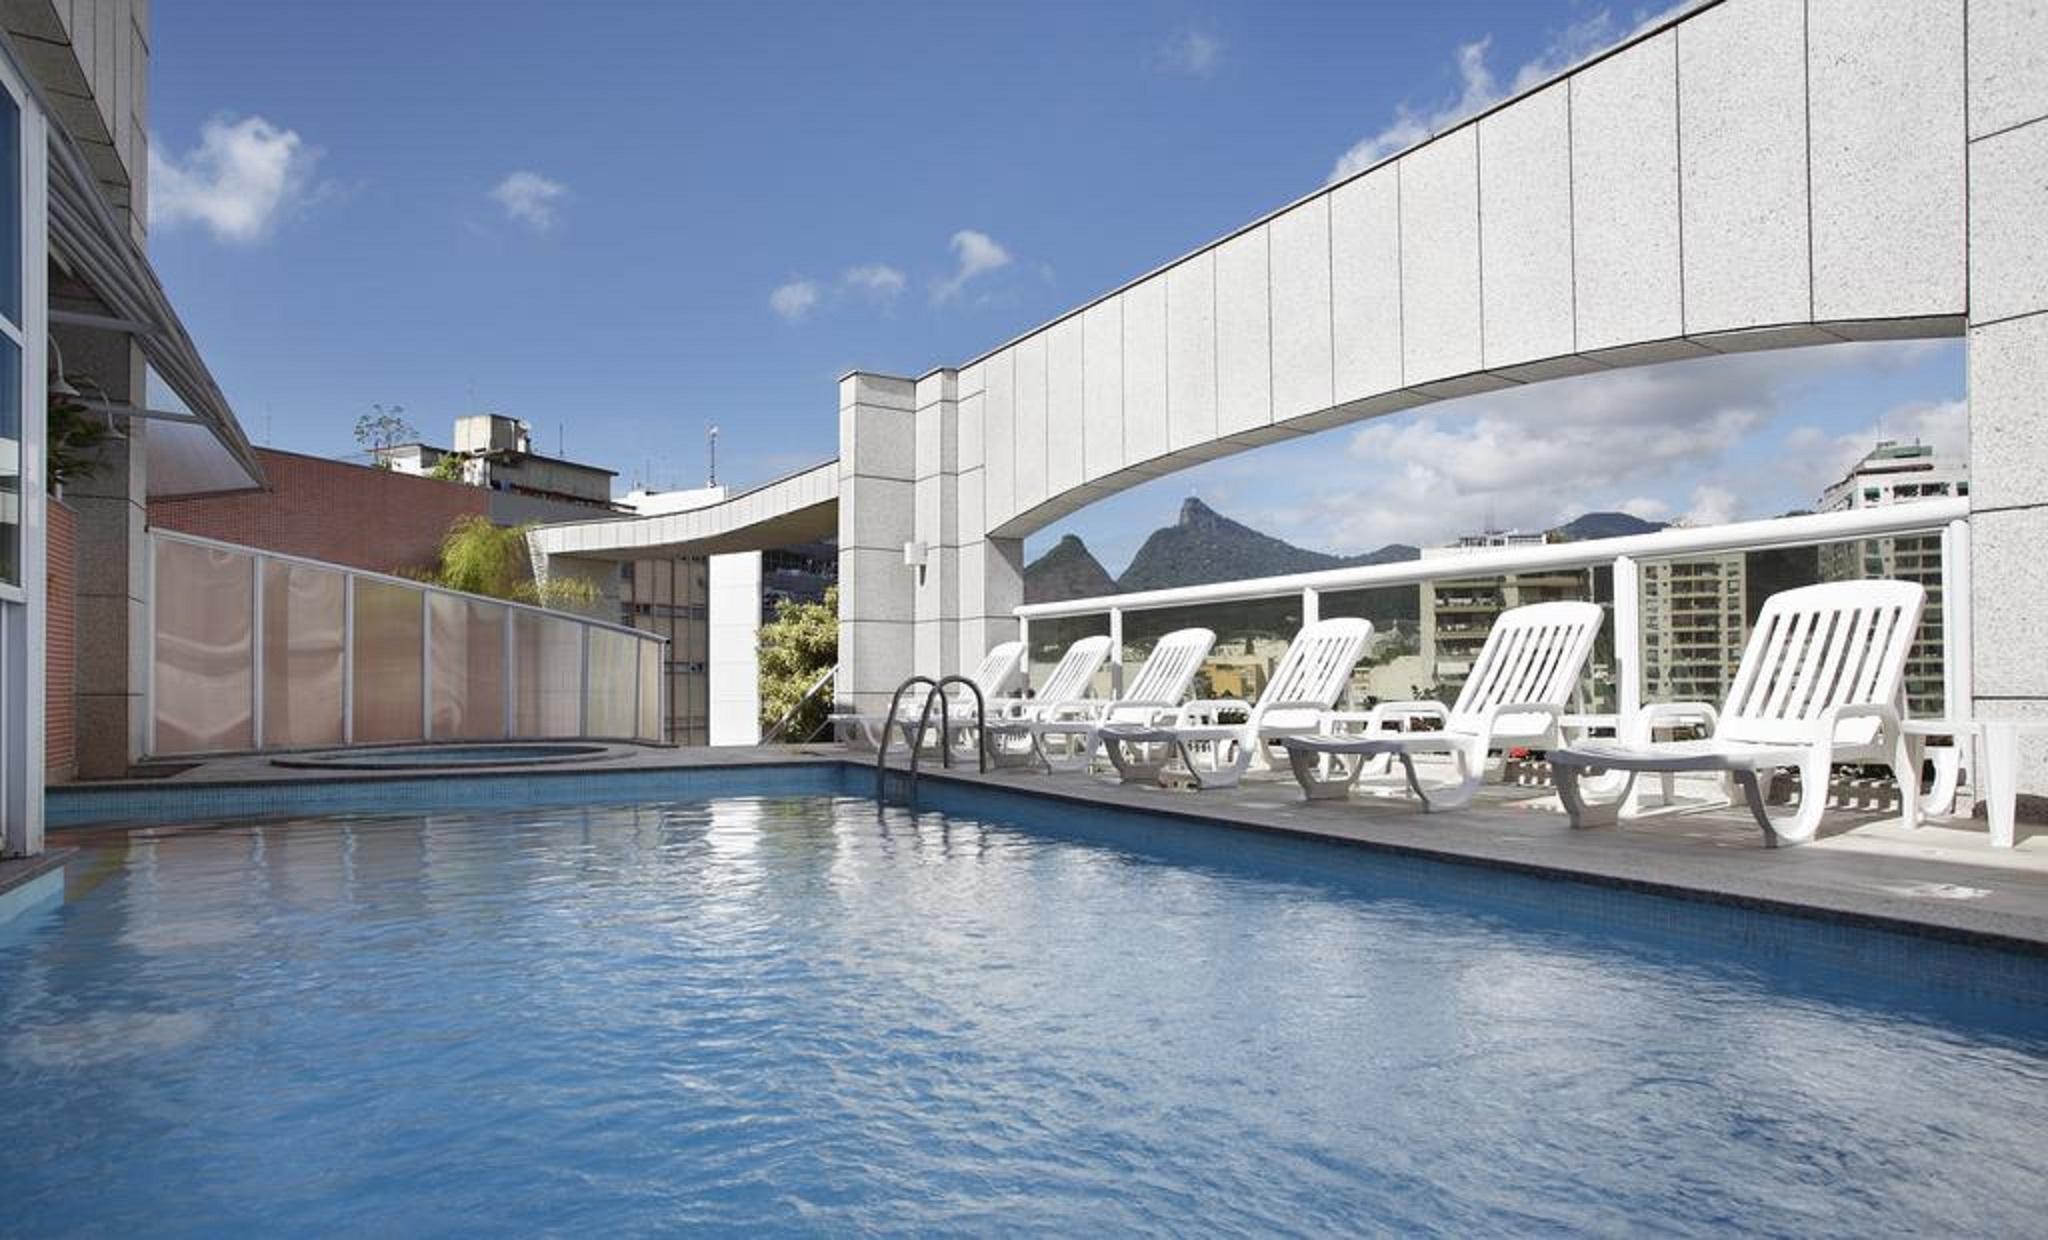 ריו דה ז'ניירו Scorial Rio Hotel מראה חיצוני תמונה